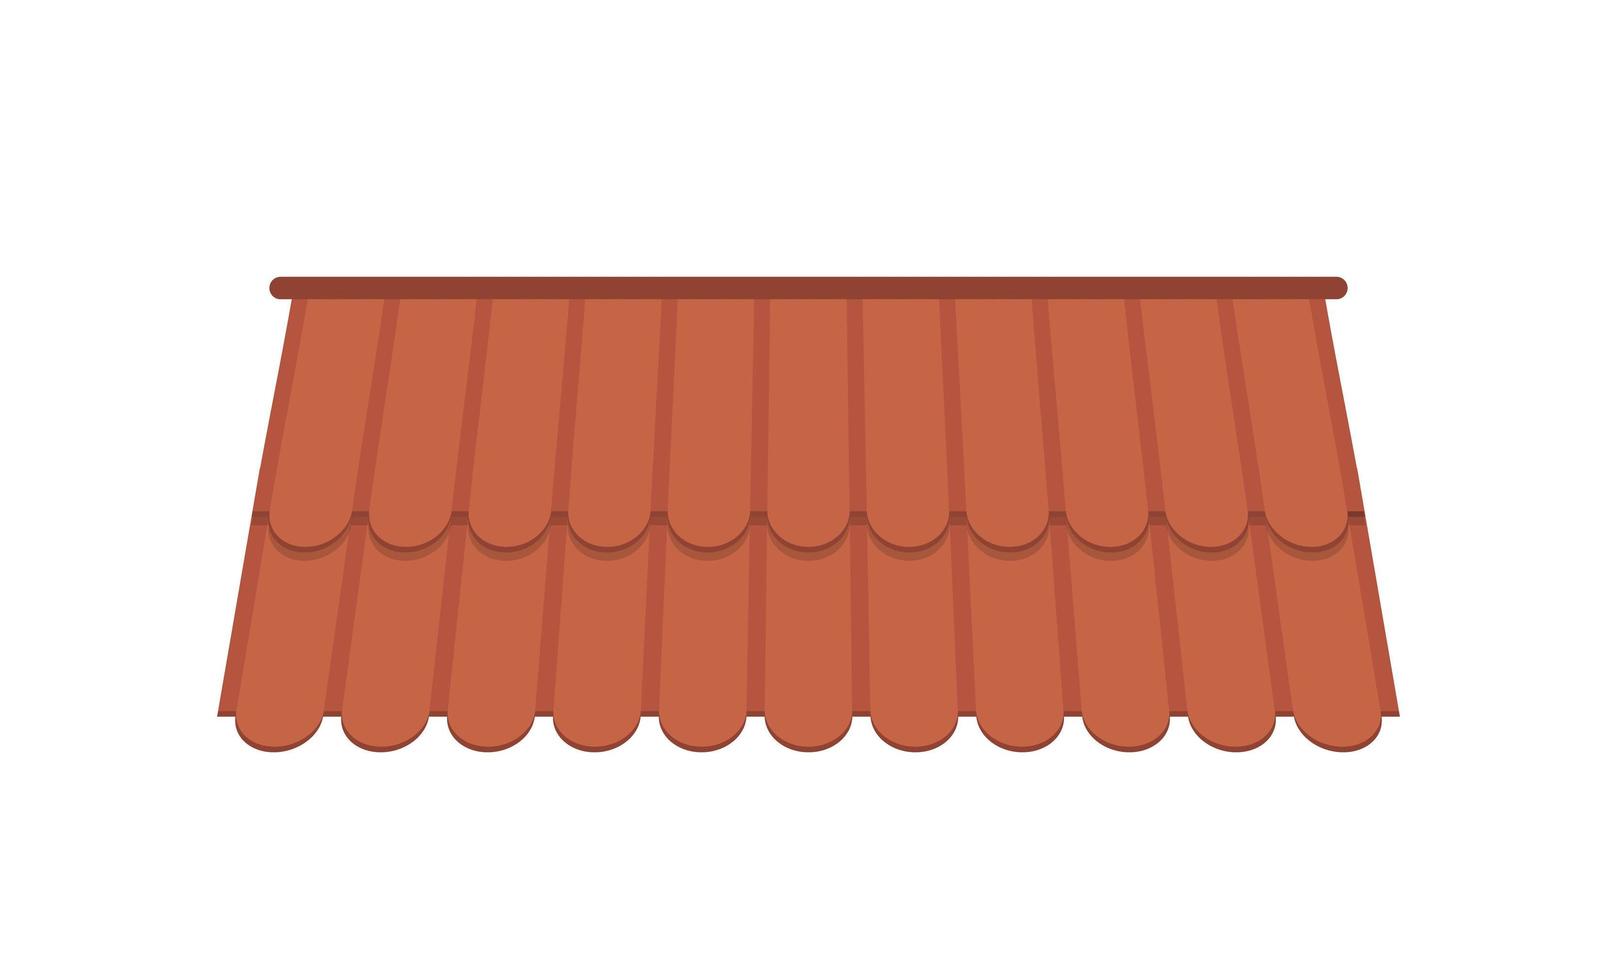 toit pour la conception de chalets d'été. toit de tuiles brunes isolé sur fond blanc. style bande dessinée. illustration vectorielle. vecteur